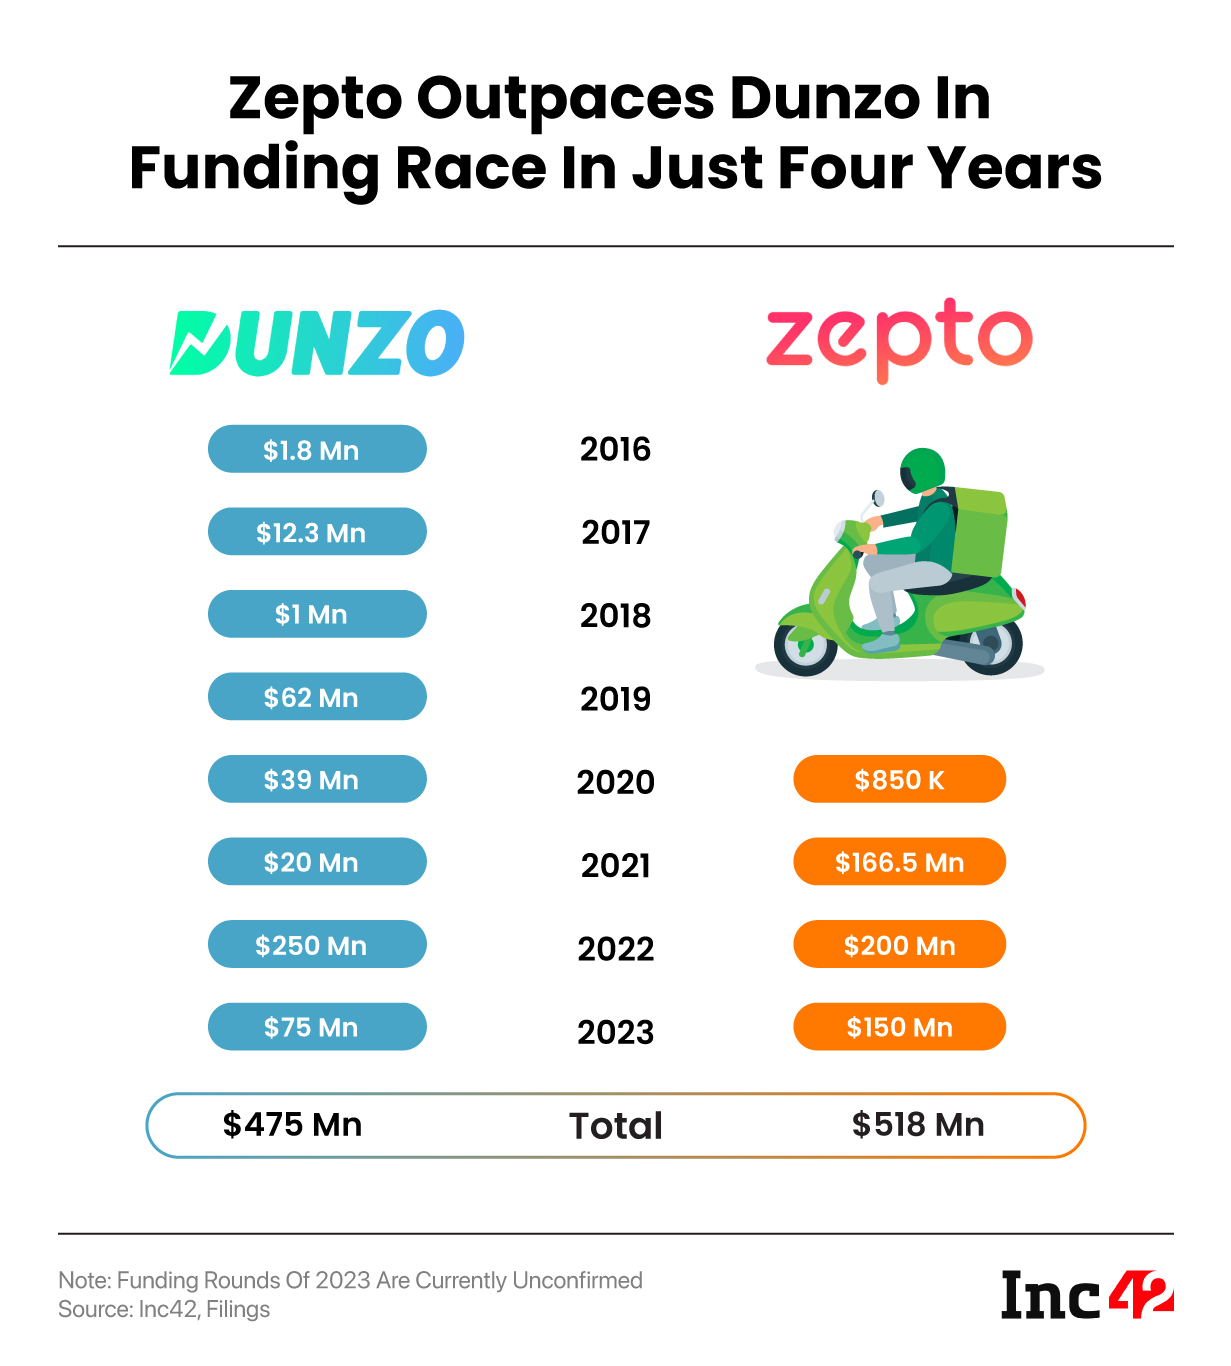 Dunzo vs Zepto - Funding Race